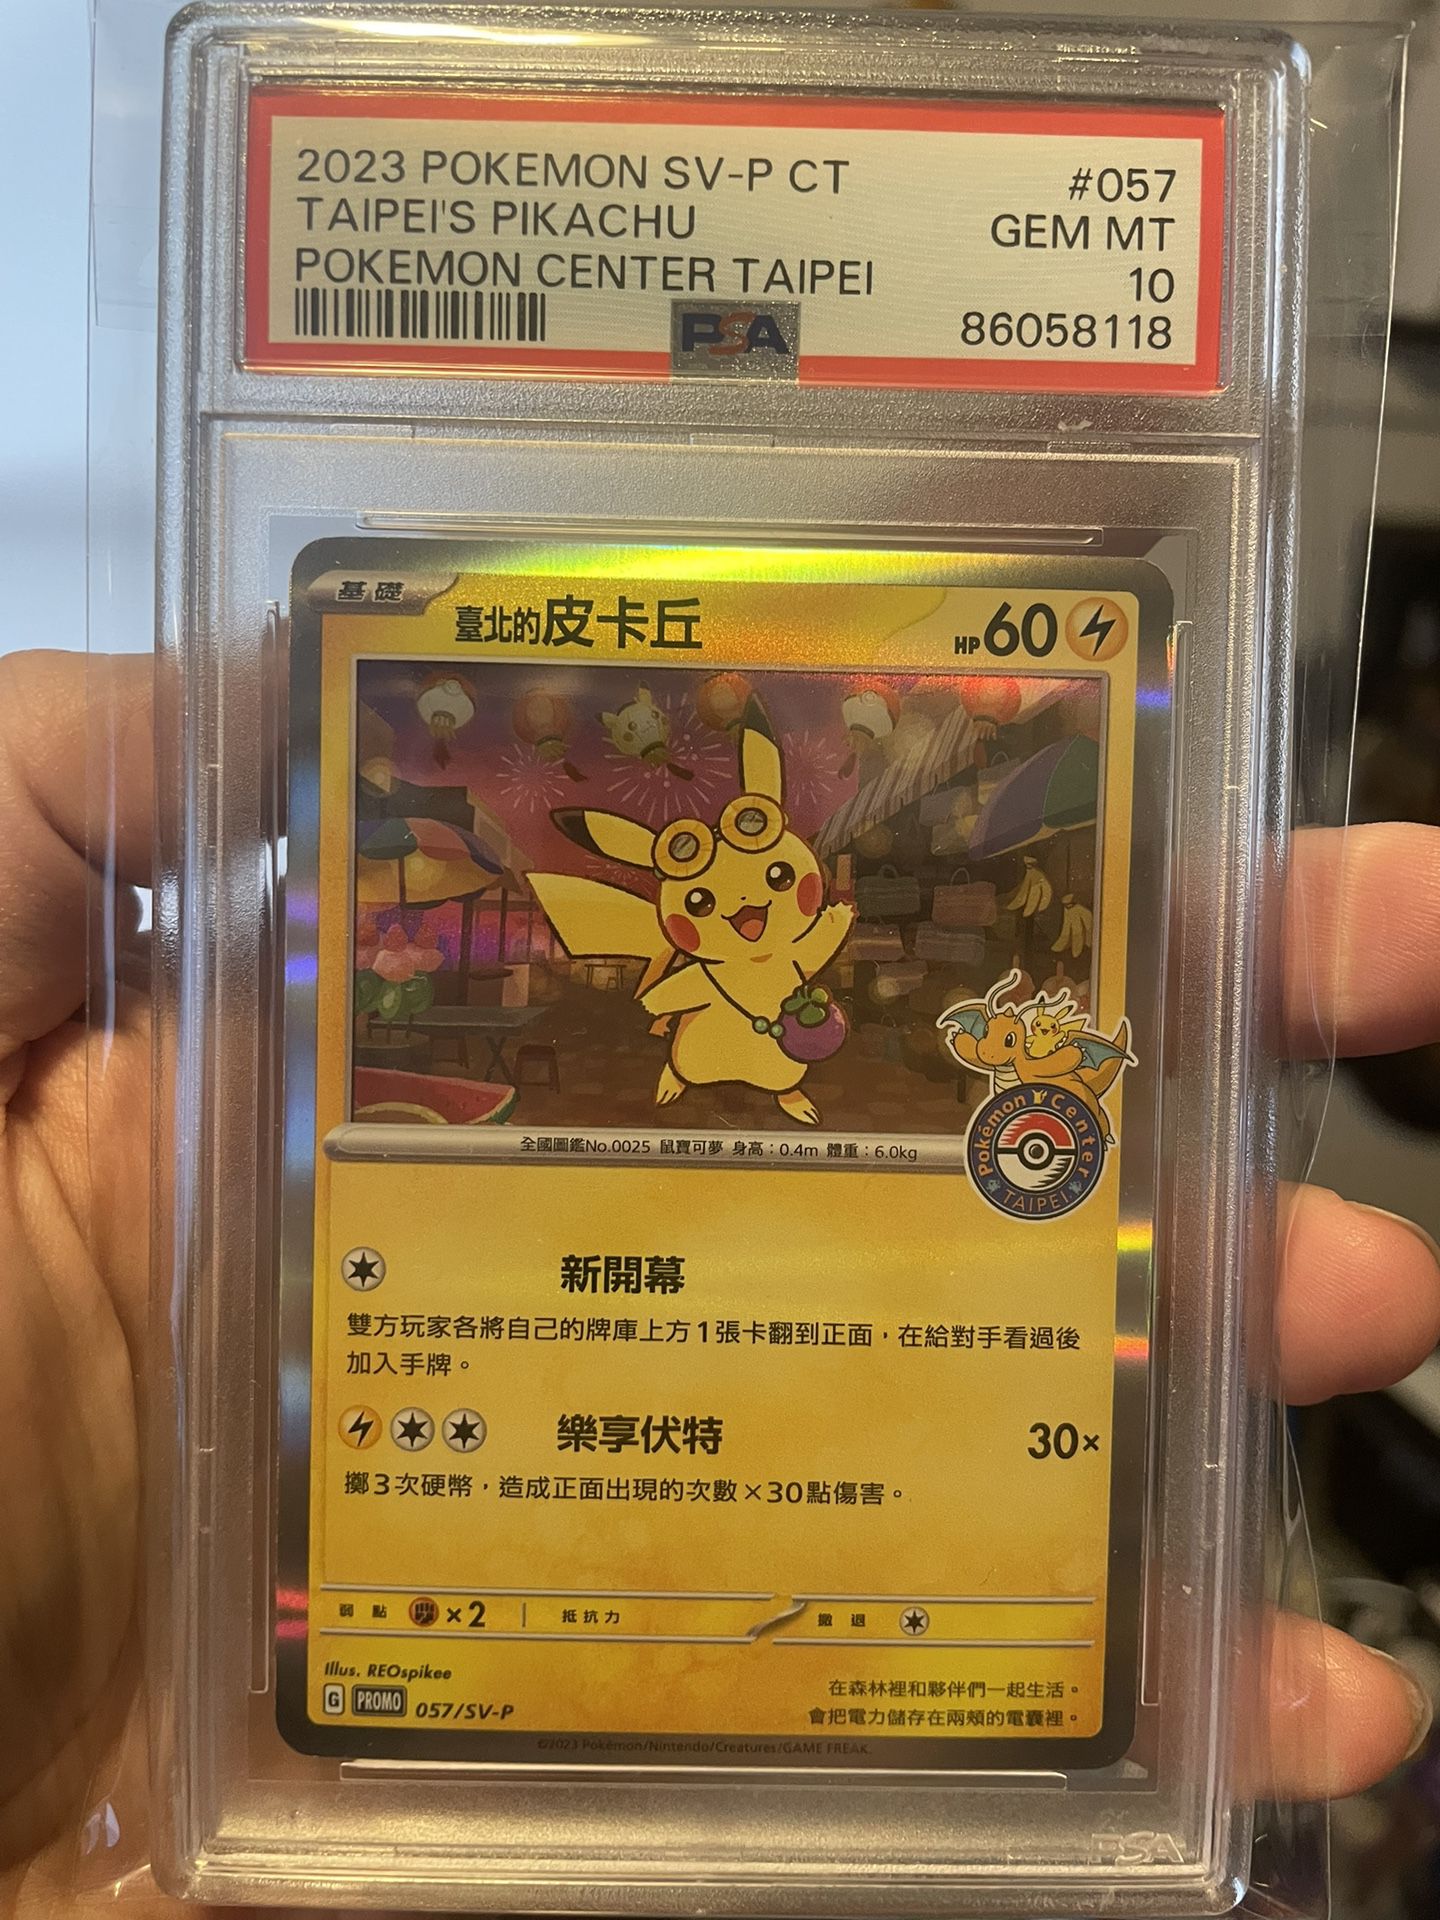 Taipei Pikachu Promo - Grade 10